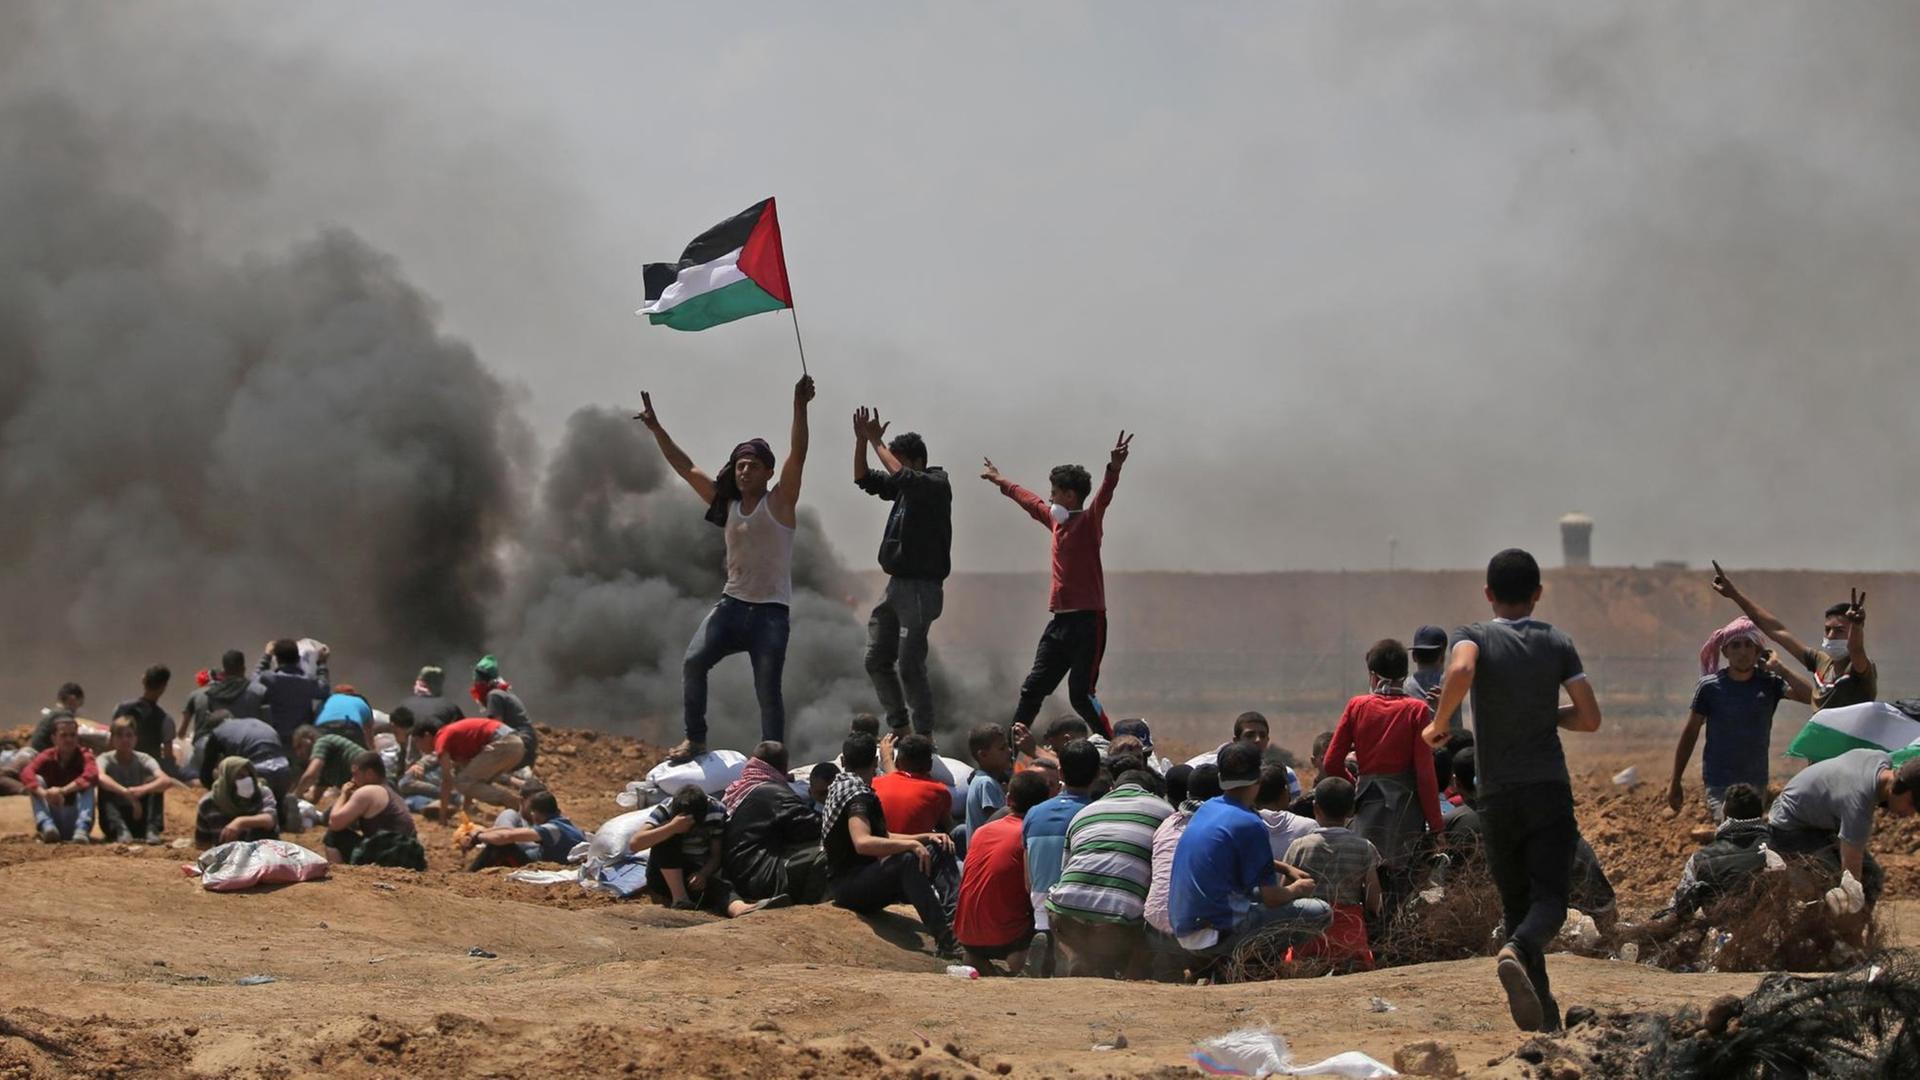 Das Bild zeigt Palästinenser bei Dschabaliya im Gazastreifen, die ihre Nationalflagge schwenken und nahe der Grenze zu Israel demonstrieren.